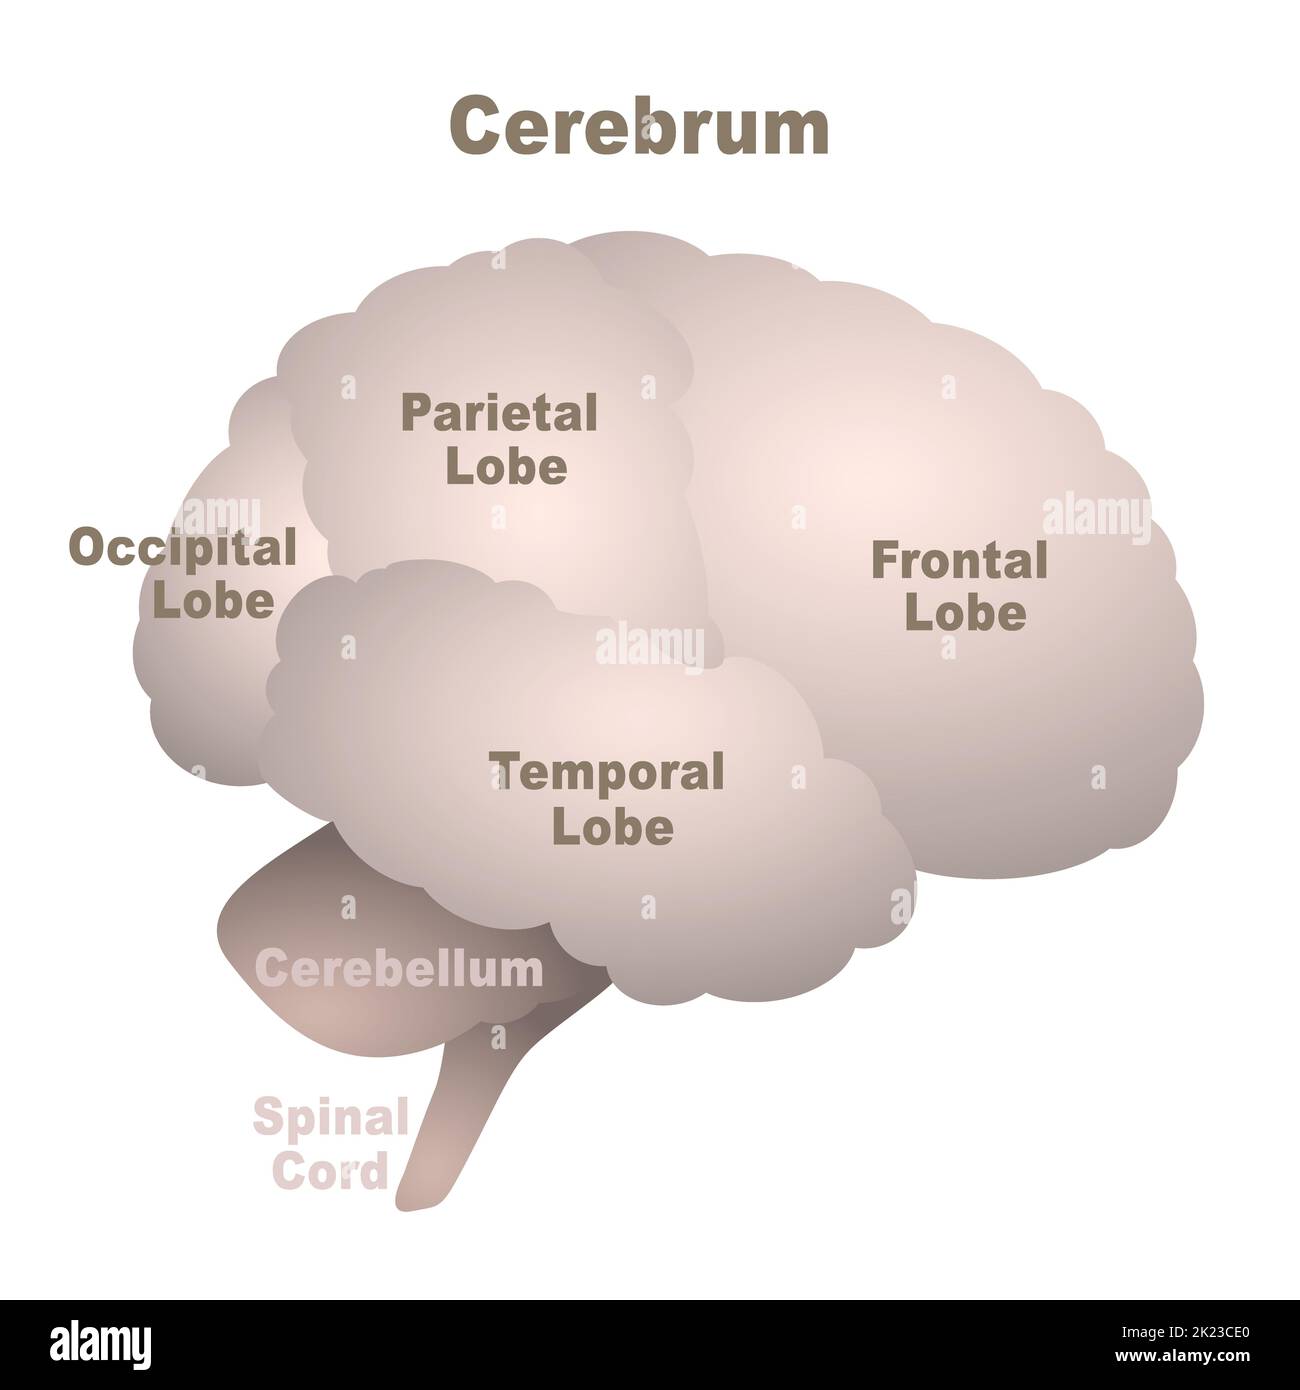 Hirnlappen-Karte, Großhirn mit frontalem, parietalem, okzipitalem und temporalem Lappen sowie Zerebellum und Rückenmark, anatomische Regionen des menschlichen Gehirns. Stockfoto